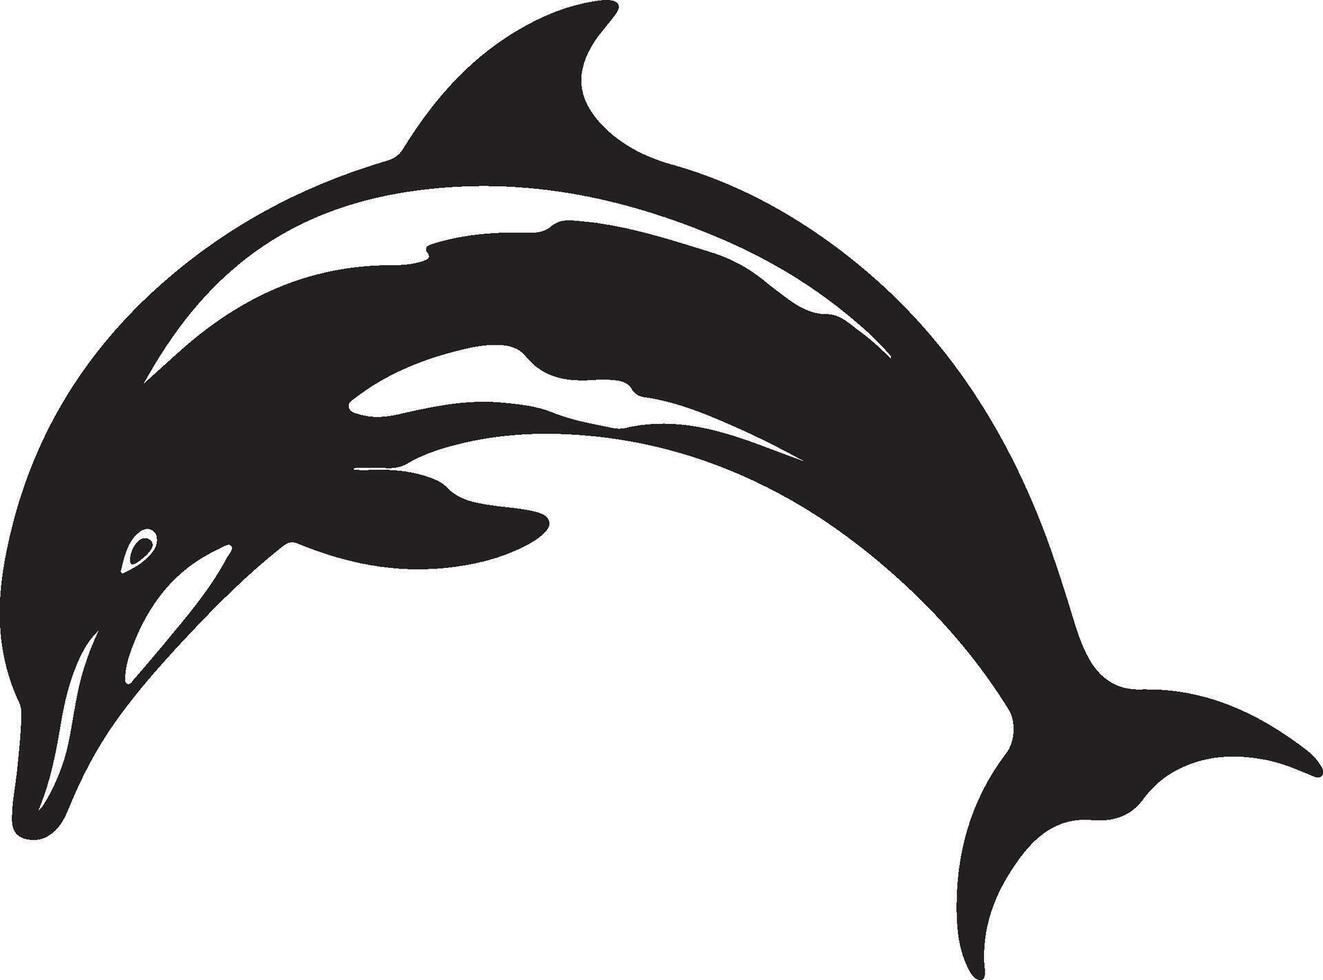 delfin silhuett vektor illustration vit bakgrund